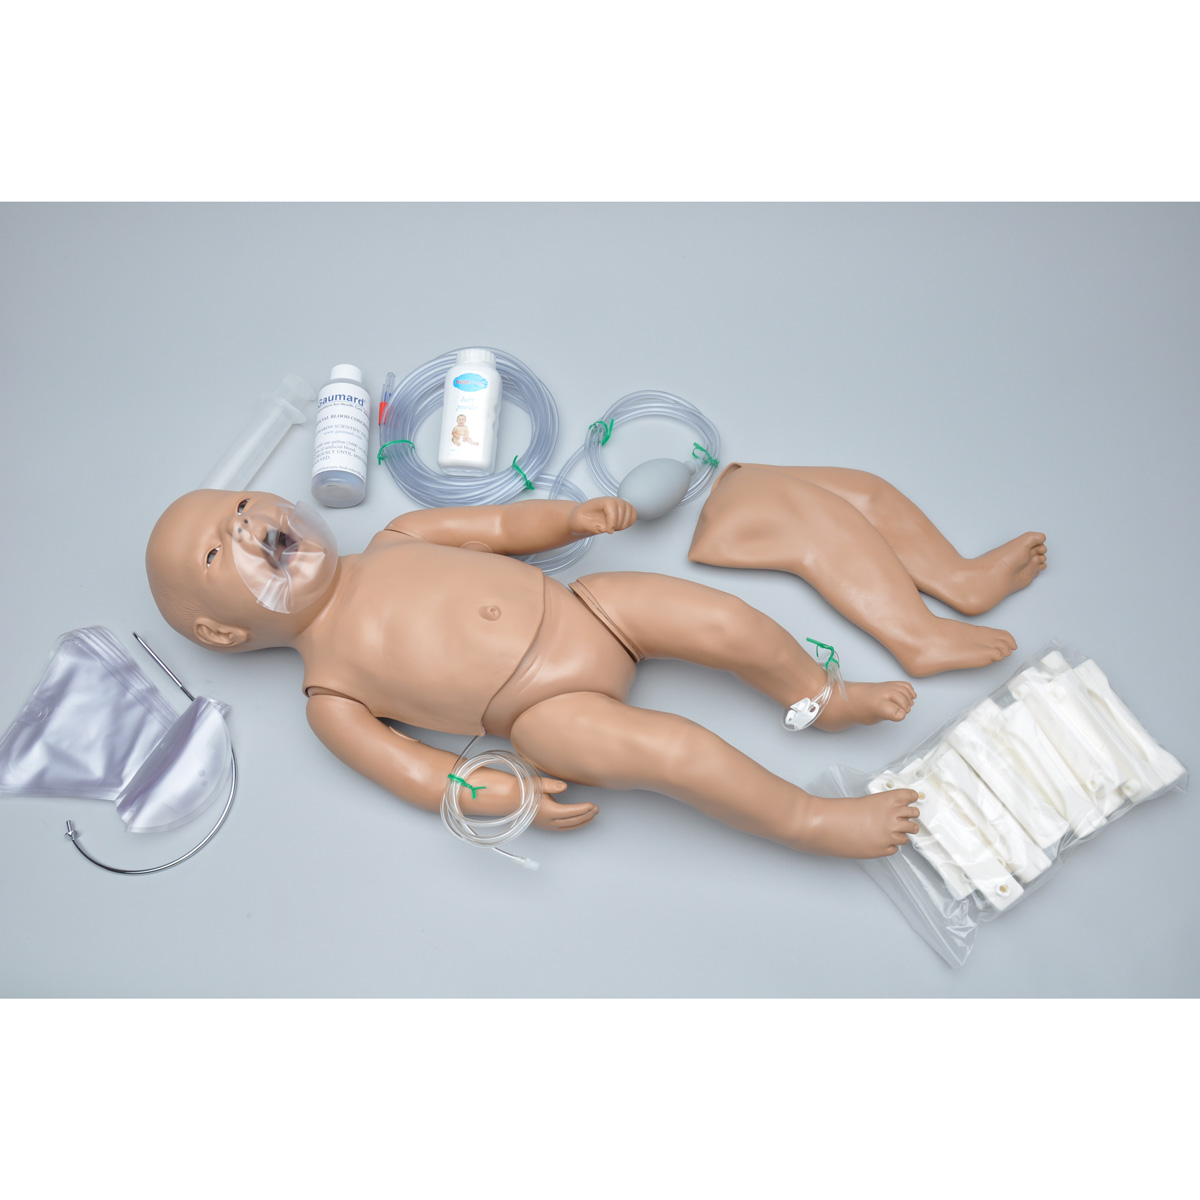 Wiederbelebungs- und Notfallsimulator (Neugeborene) - mit intraossärem und venösem Zugang, Bestellnummer 1017561, W45136, S103.M, Gaumard